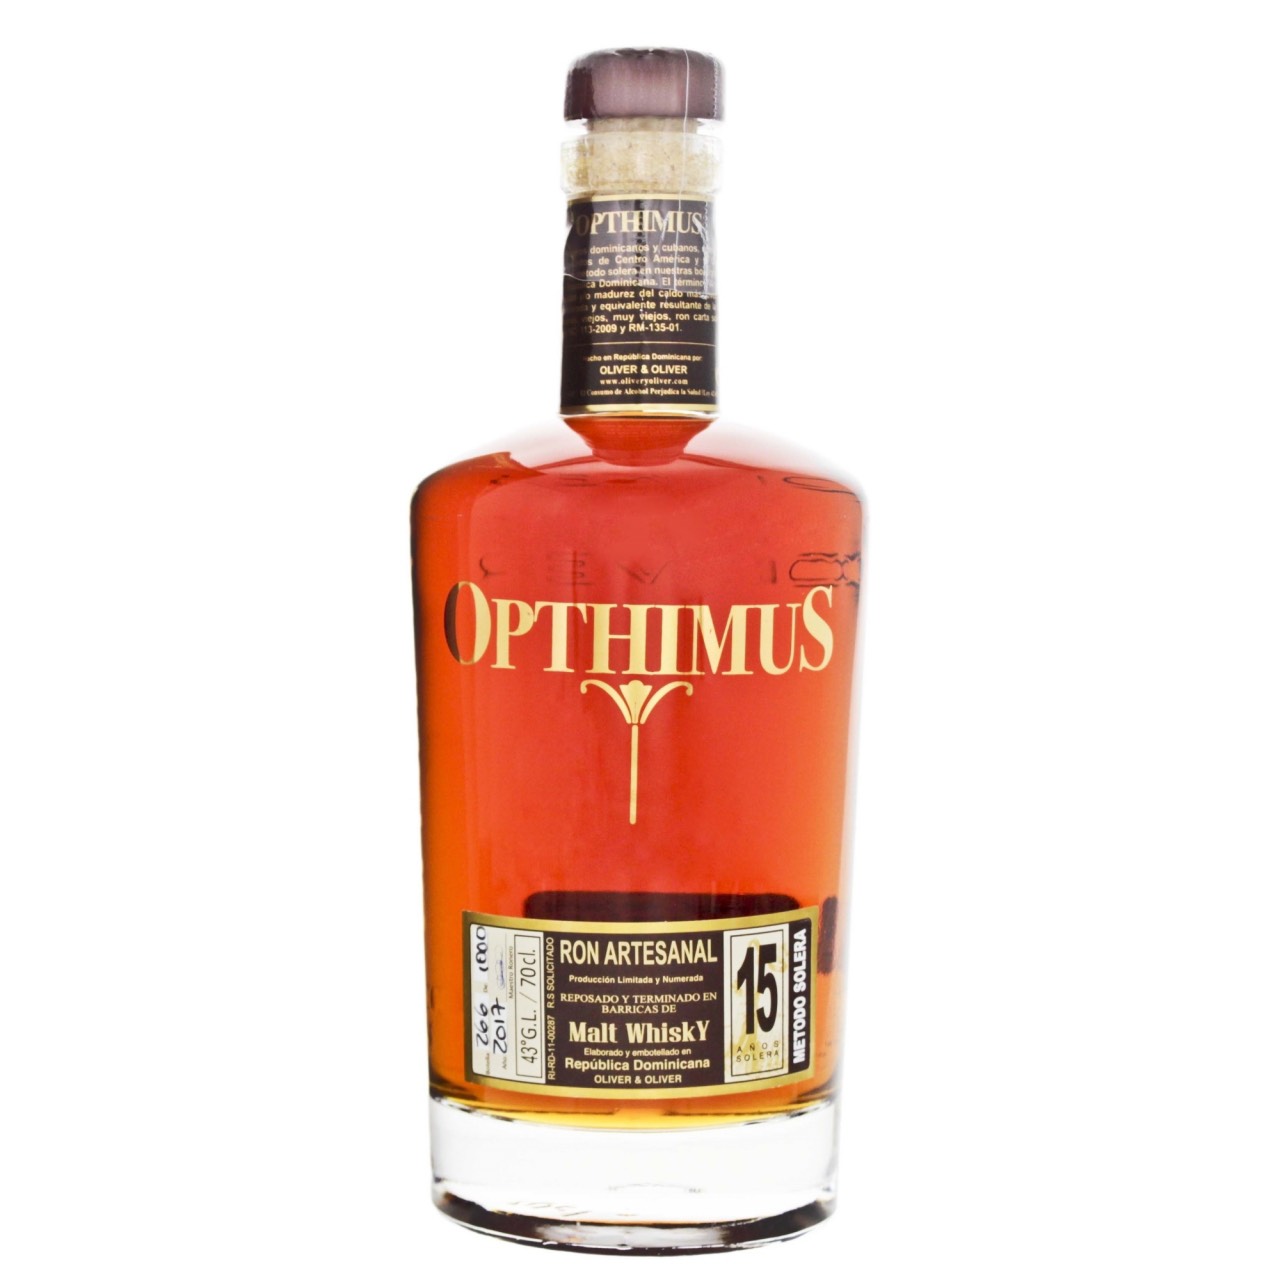 Bottle image of Opthimus 15 Años Malt Whisky Finish